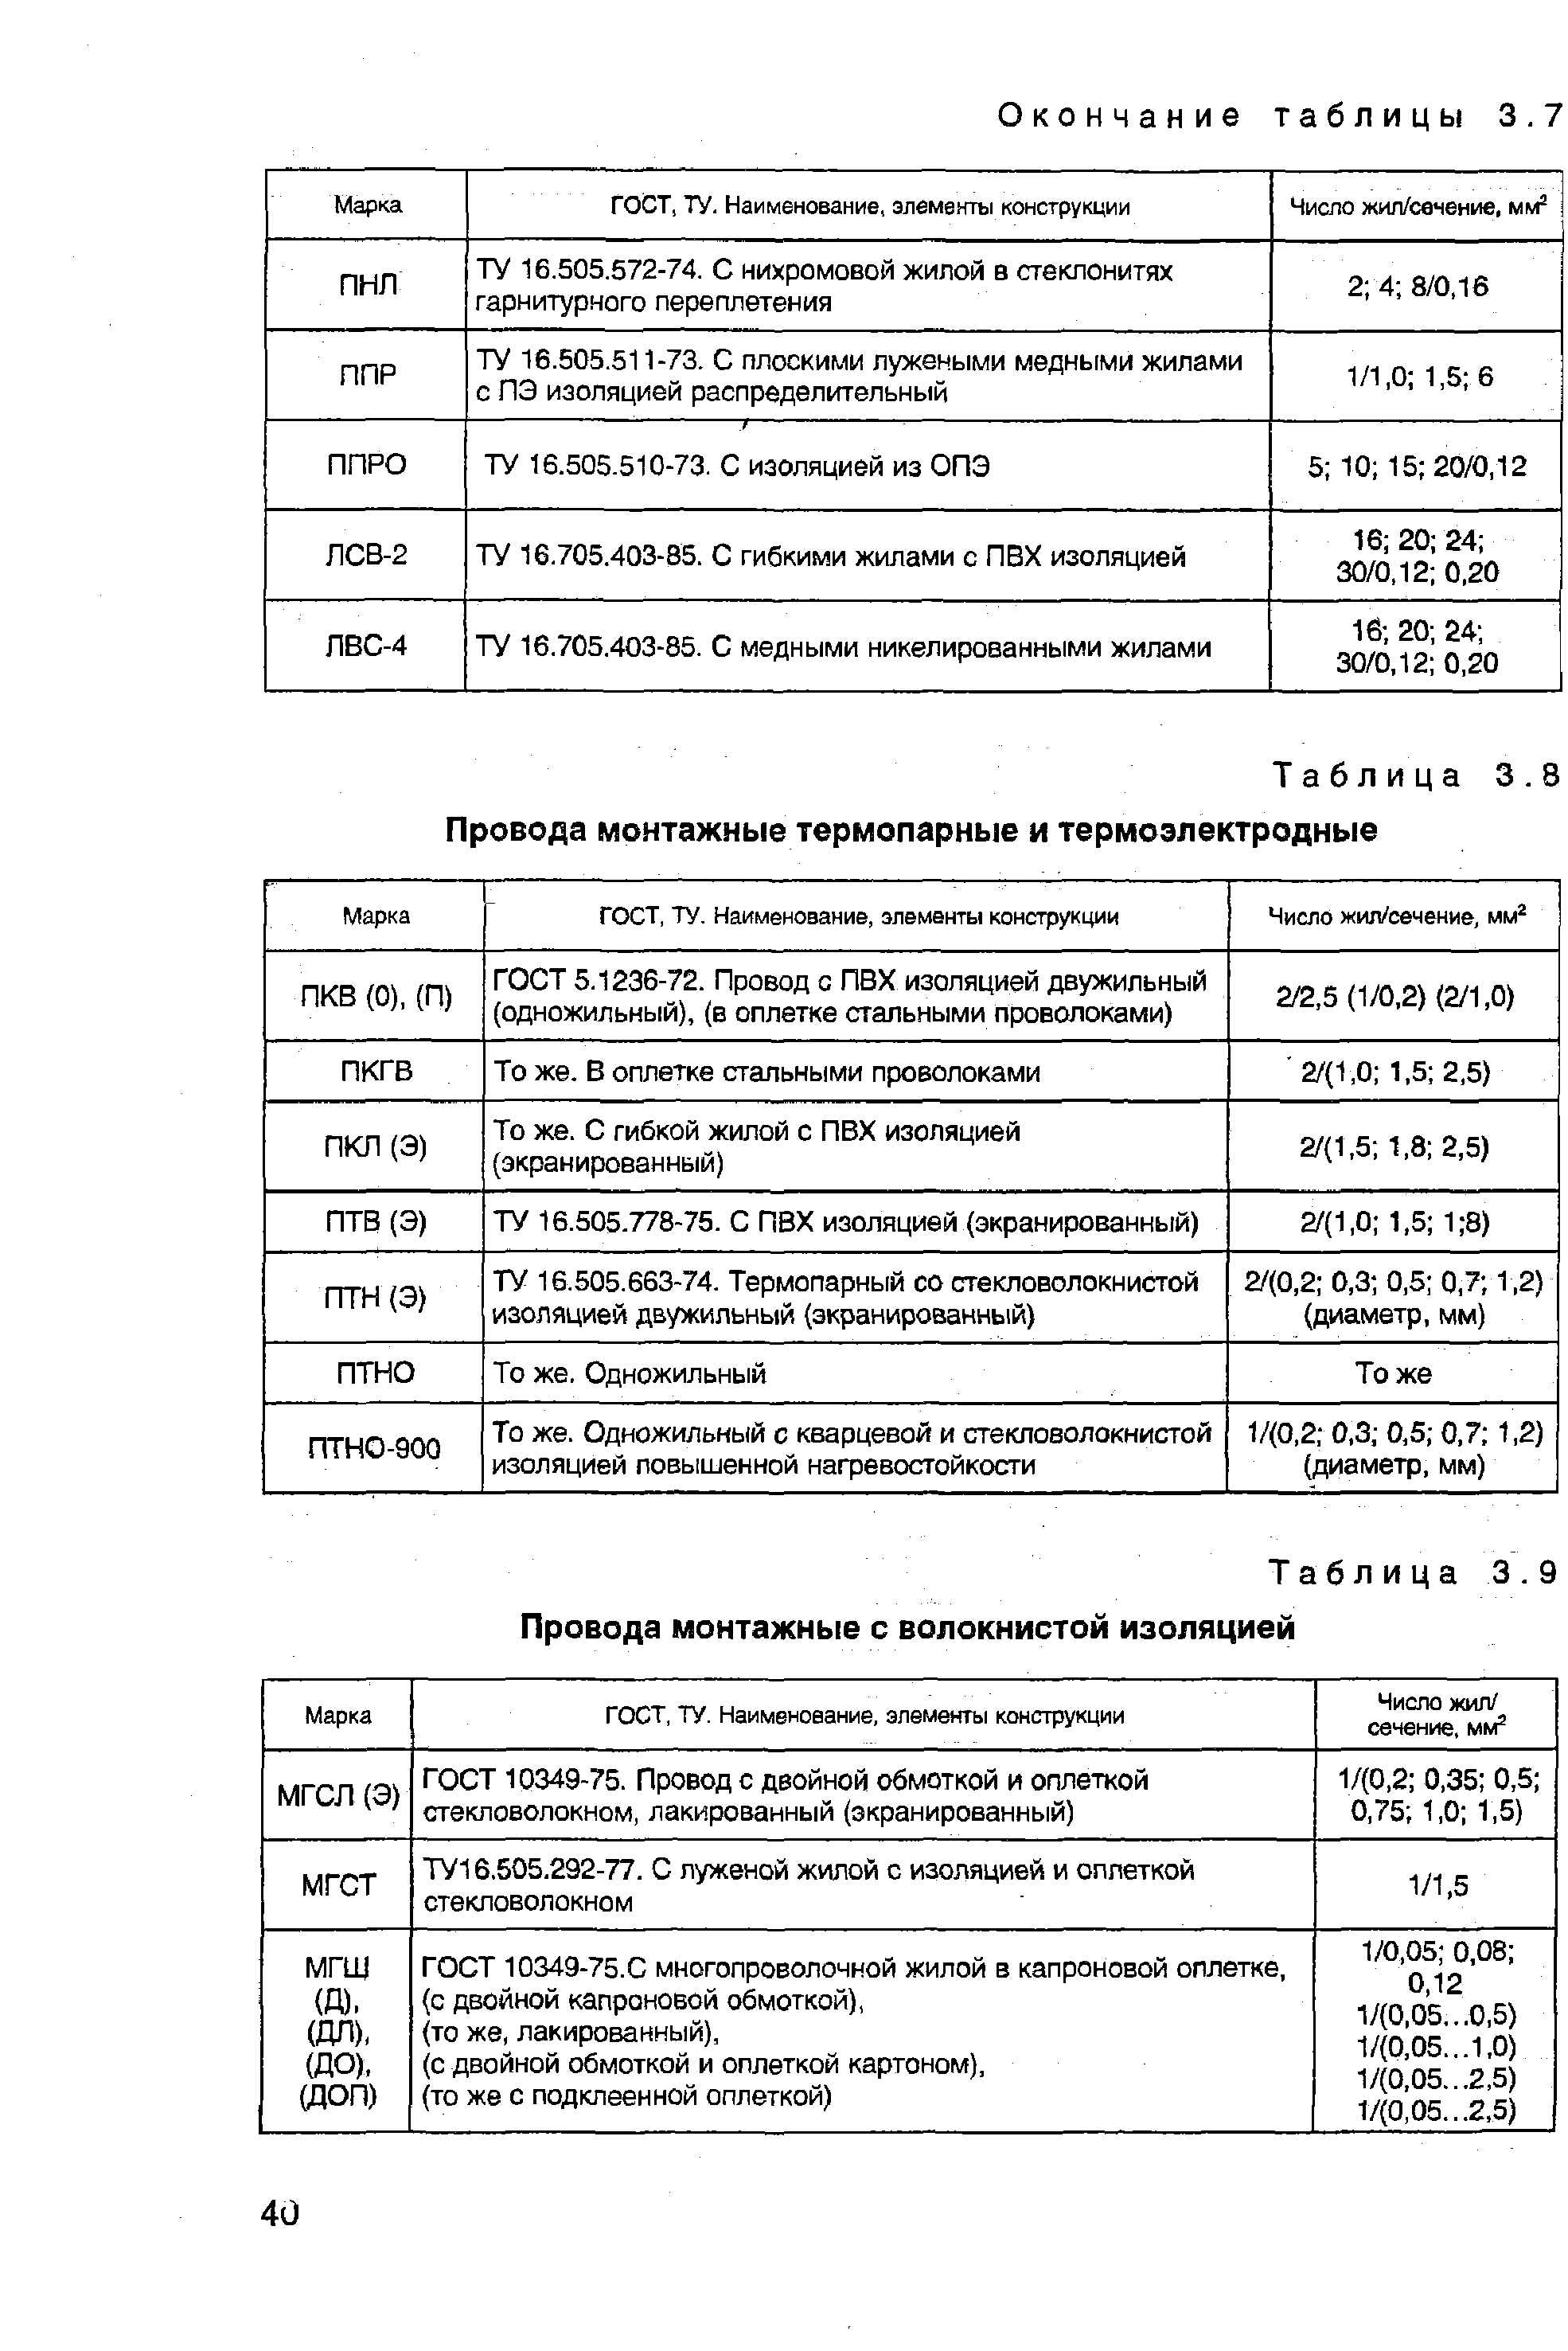 Таблица 3.8 Провода монтажные термопарные и термоэлектродные
